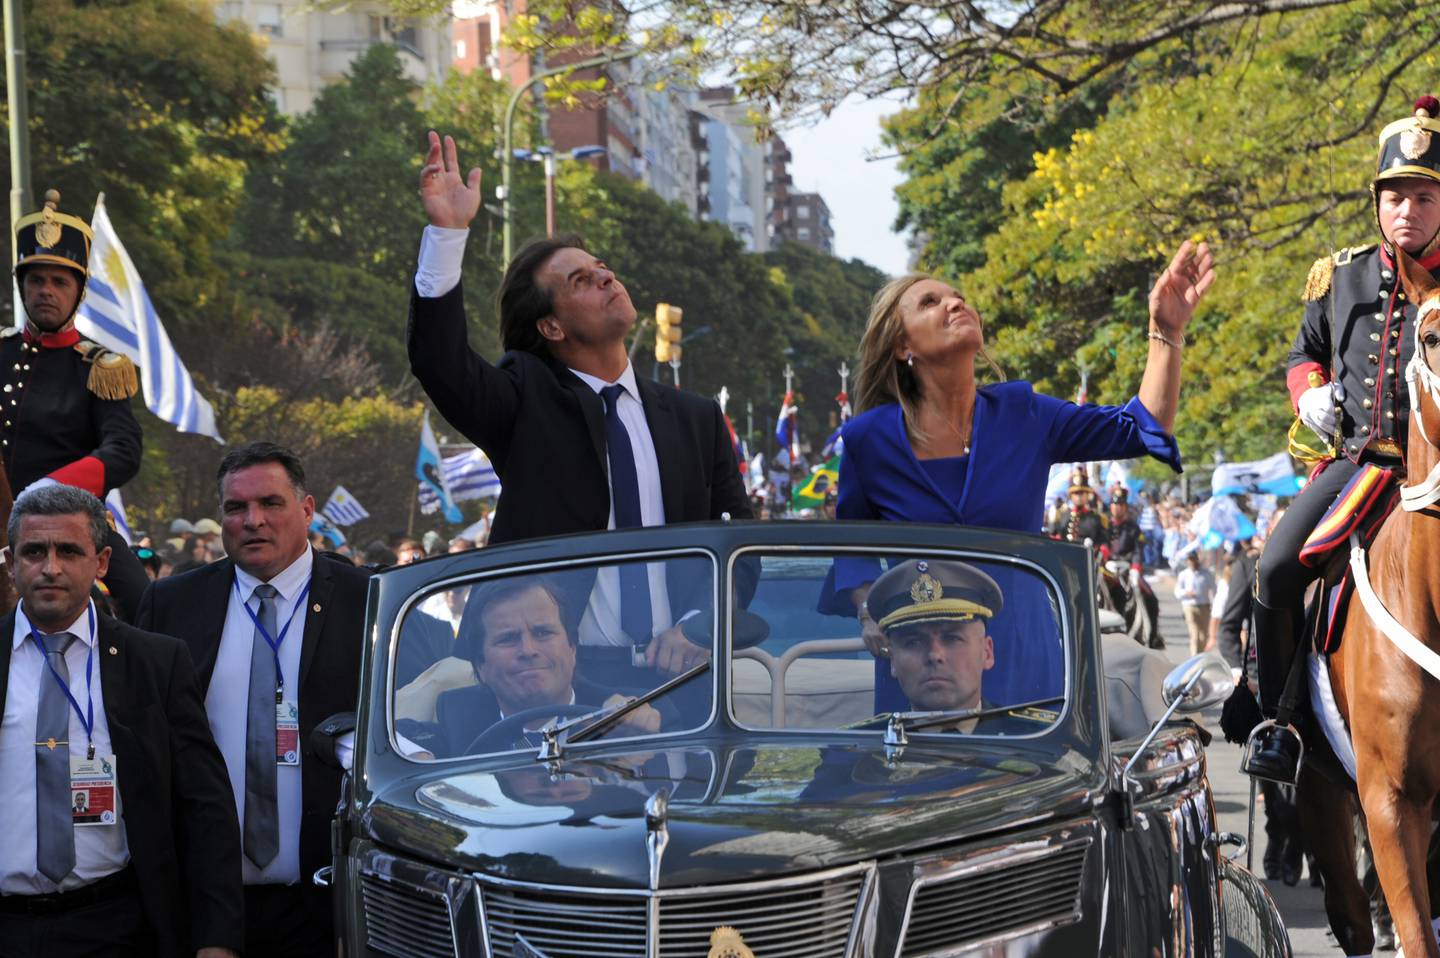 Alejandro Astesiano, jefe de la custodia de Lacalle Pou, acompañó al presidente en su asunción del 1° de marzo de 2020 durante una recorrida por Montevideo. En la imagen, Astesiano es el más alto de los dos hombres al lado del vehículo.dfd